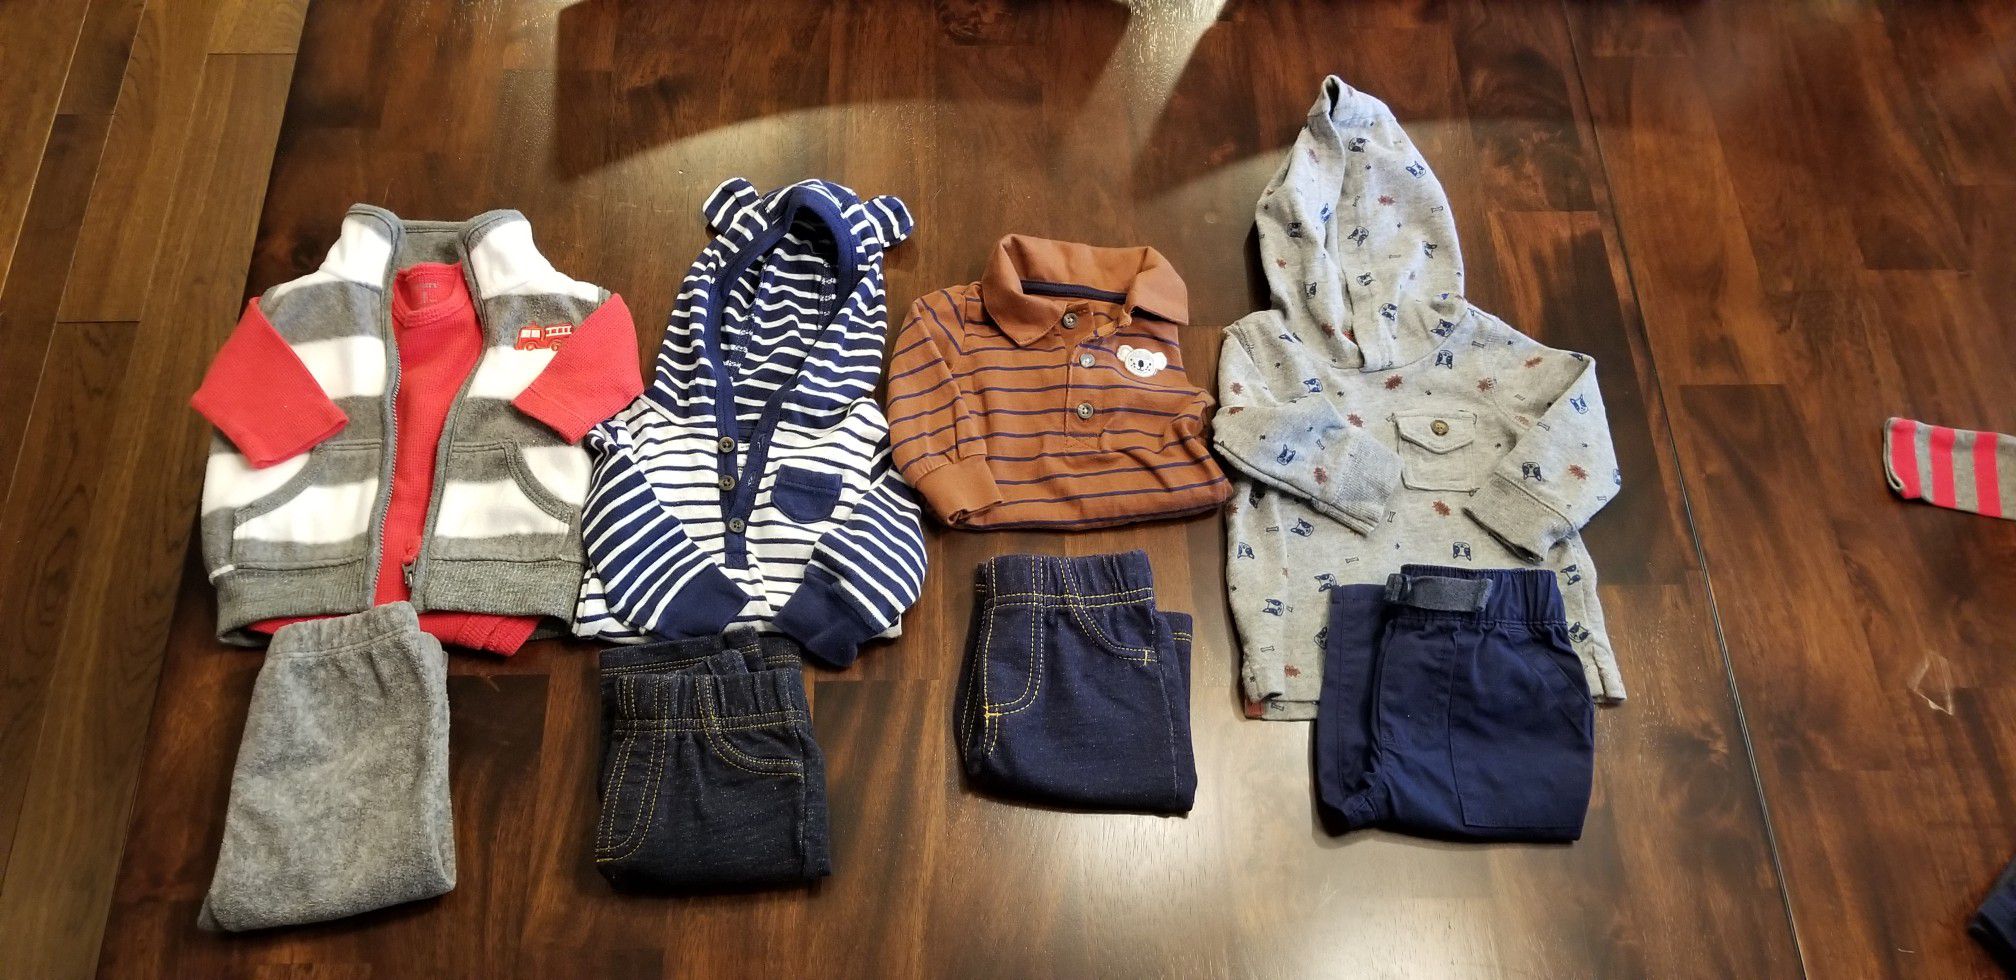 Boys 3 month clothing bundle 46 pieces